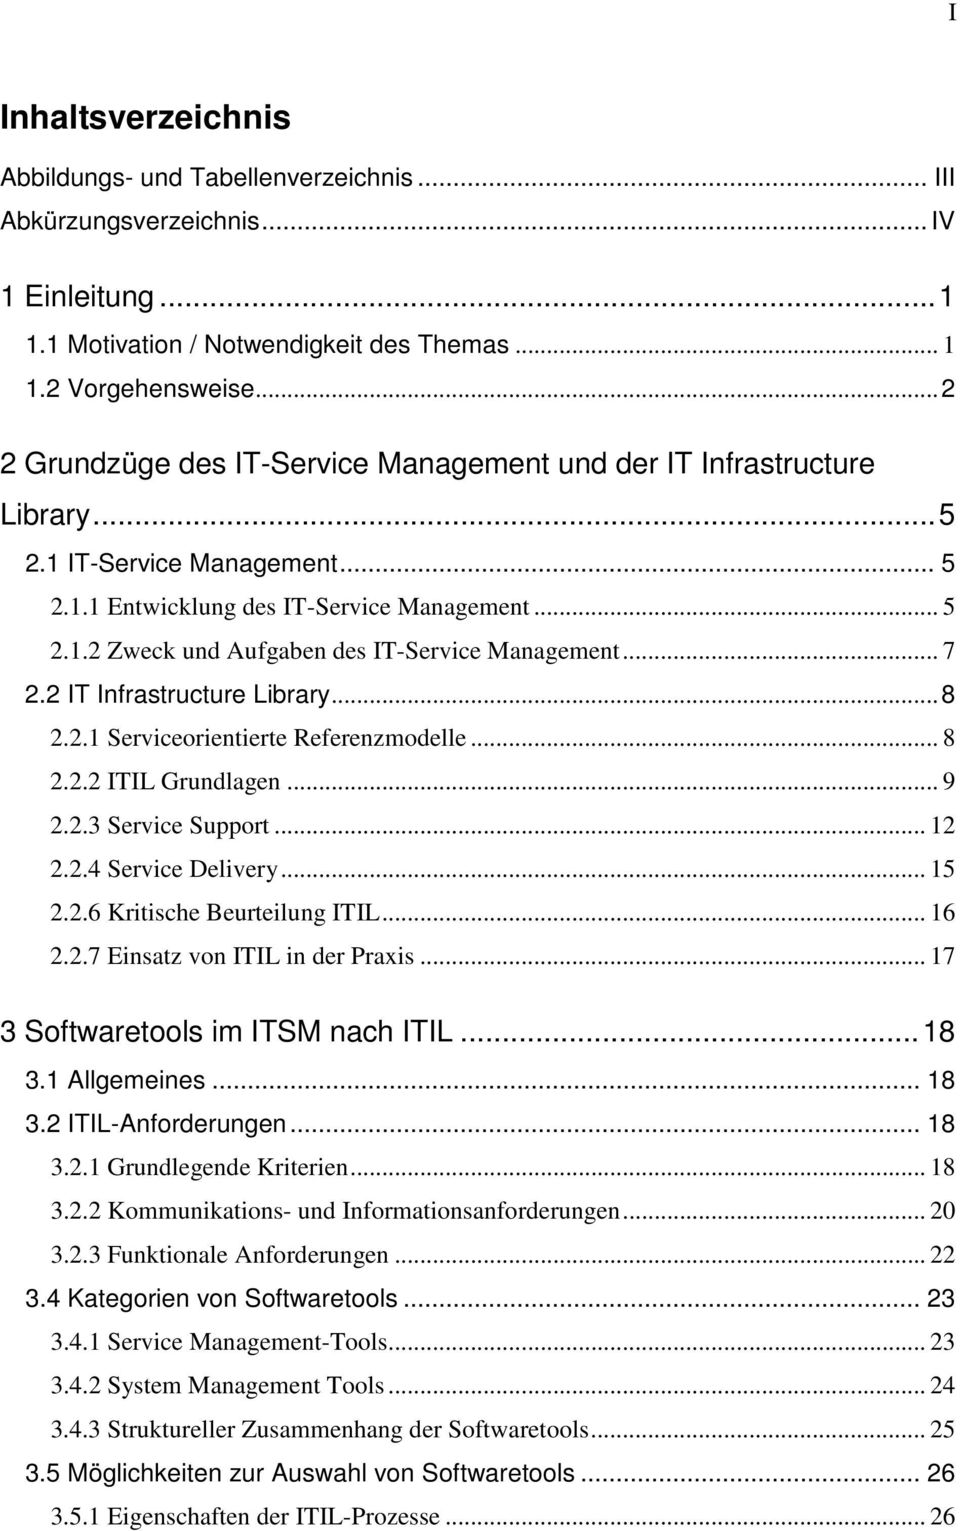 .. 7 2.2 IT Infrastructure Library...8 2.2.1 Serviceorientierte Referenzmodelle... 8 2.2.2 ITIL Grundlagen... 9 2.2.3 Service Support... 12 2.2.4 Service Delivery... 15 2.2.6 Kritische Beurteilung ITIL.